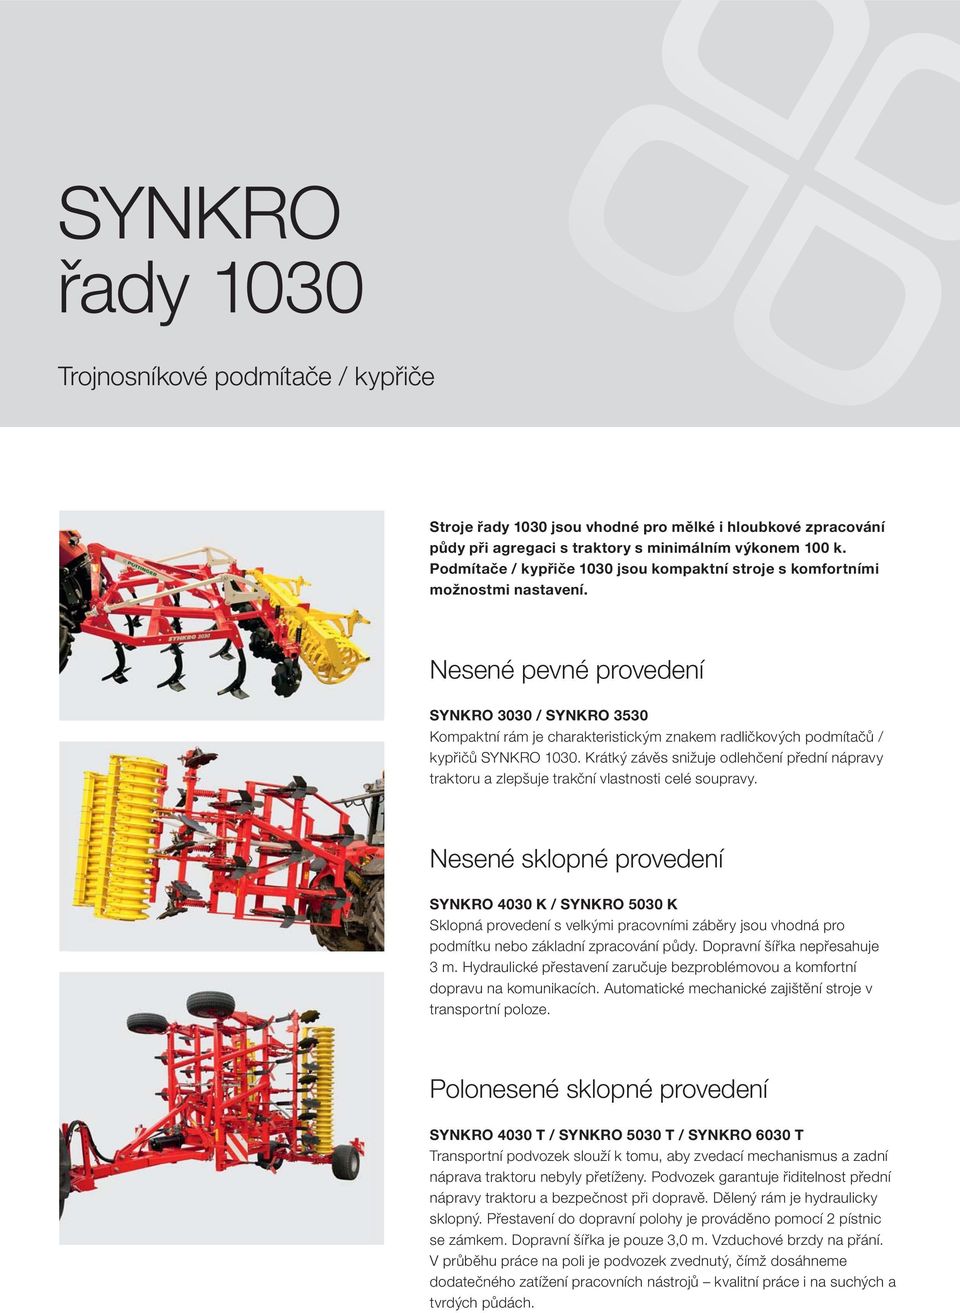 Nesené pevné provedení SYNKRO 3030 / SYNKRO 3530 Kompaktní rám je charakteristickým znakem radličkových podmítačů / kypřičů SYNKRO 1030.